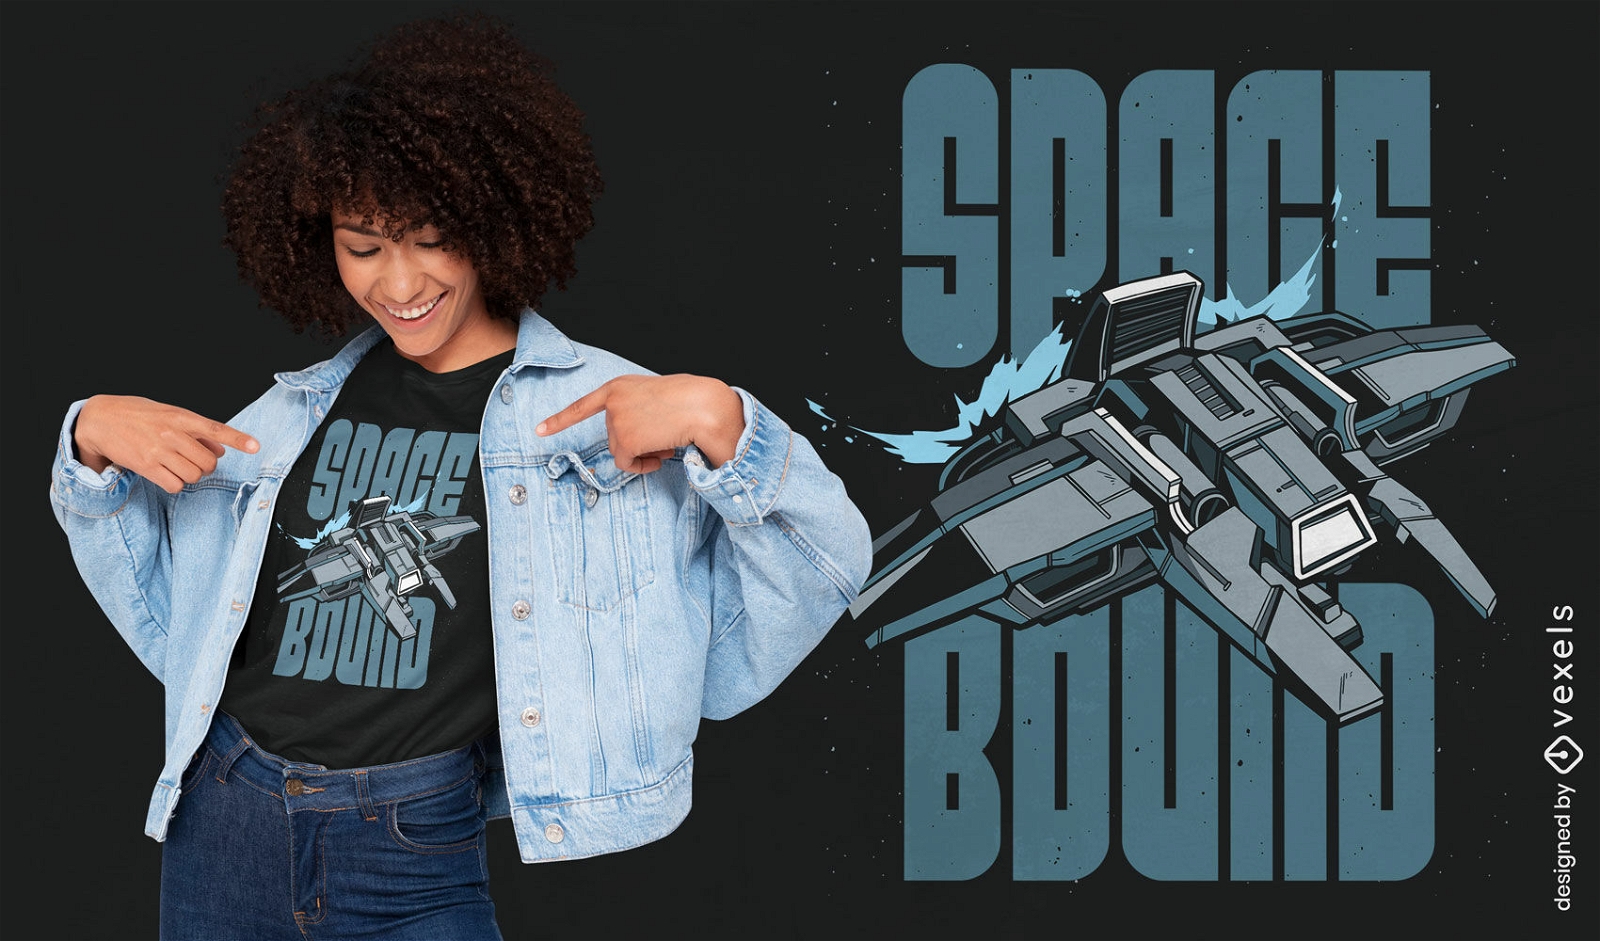 Space bound t-shirt design